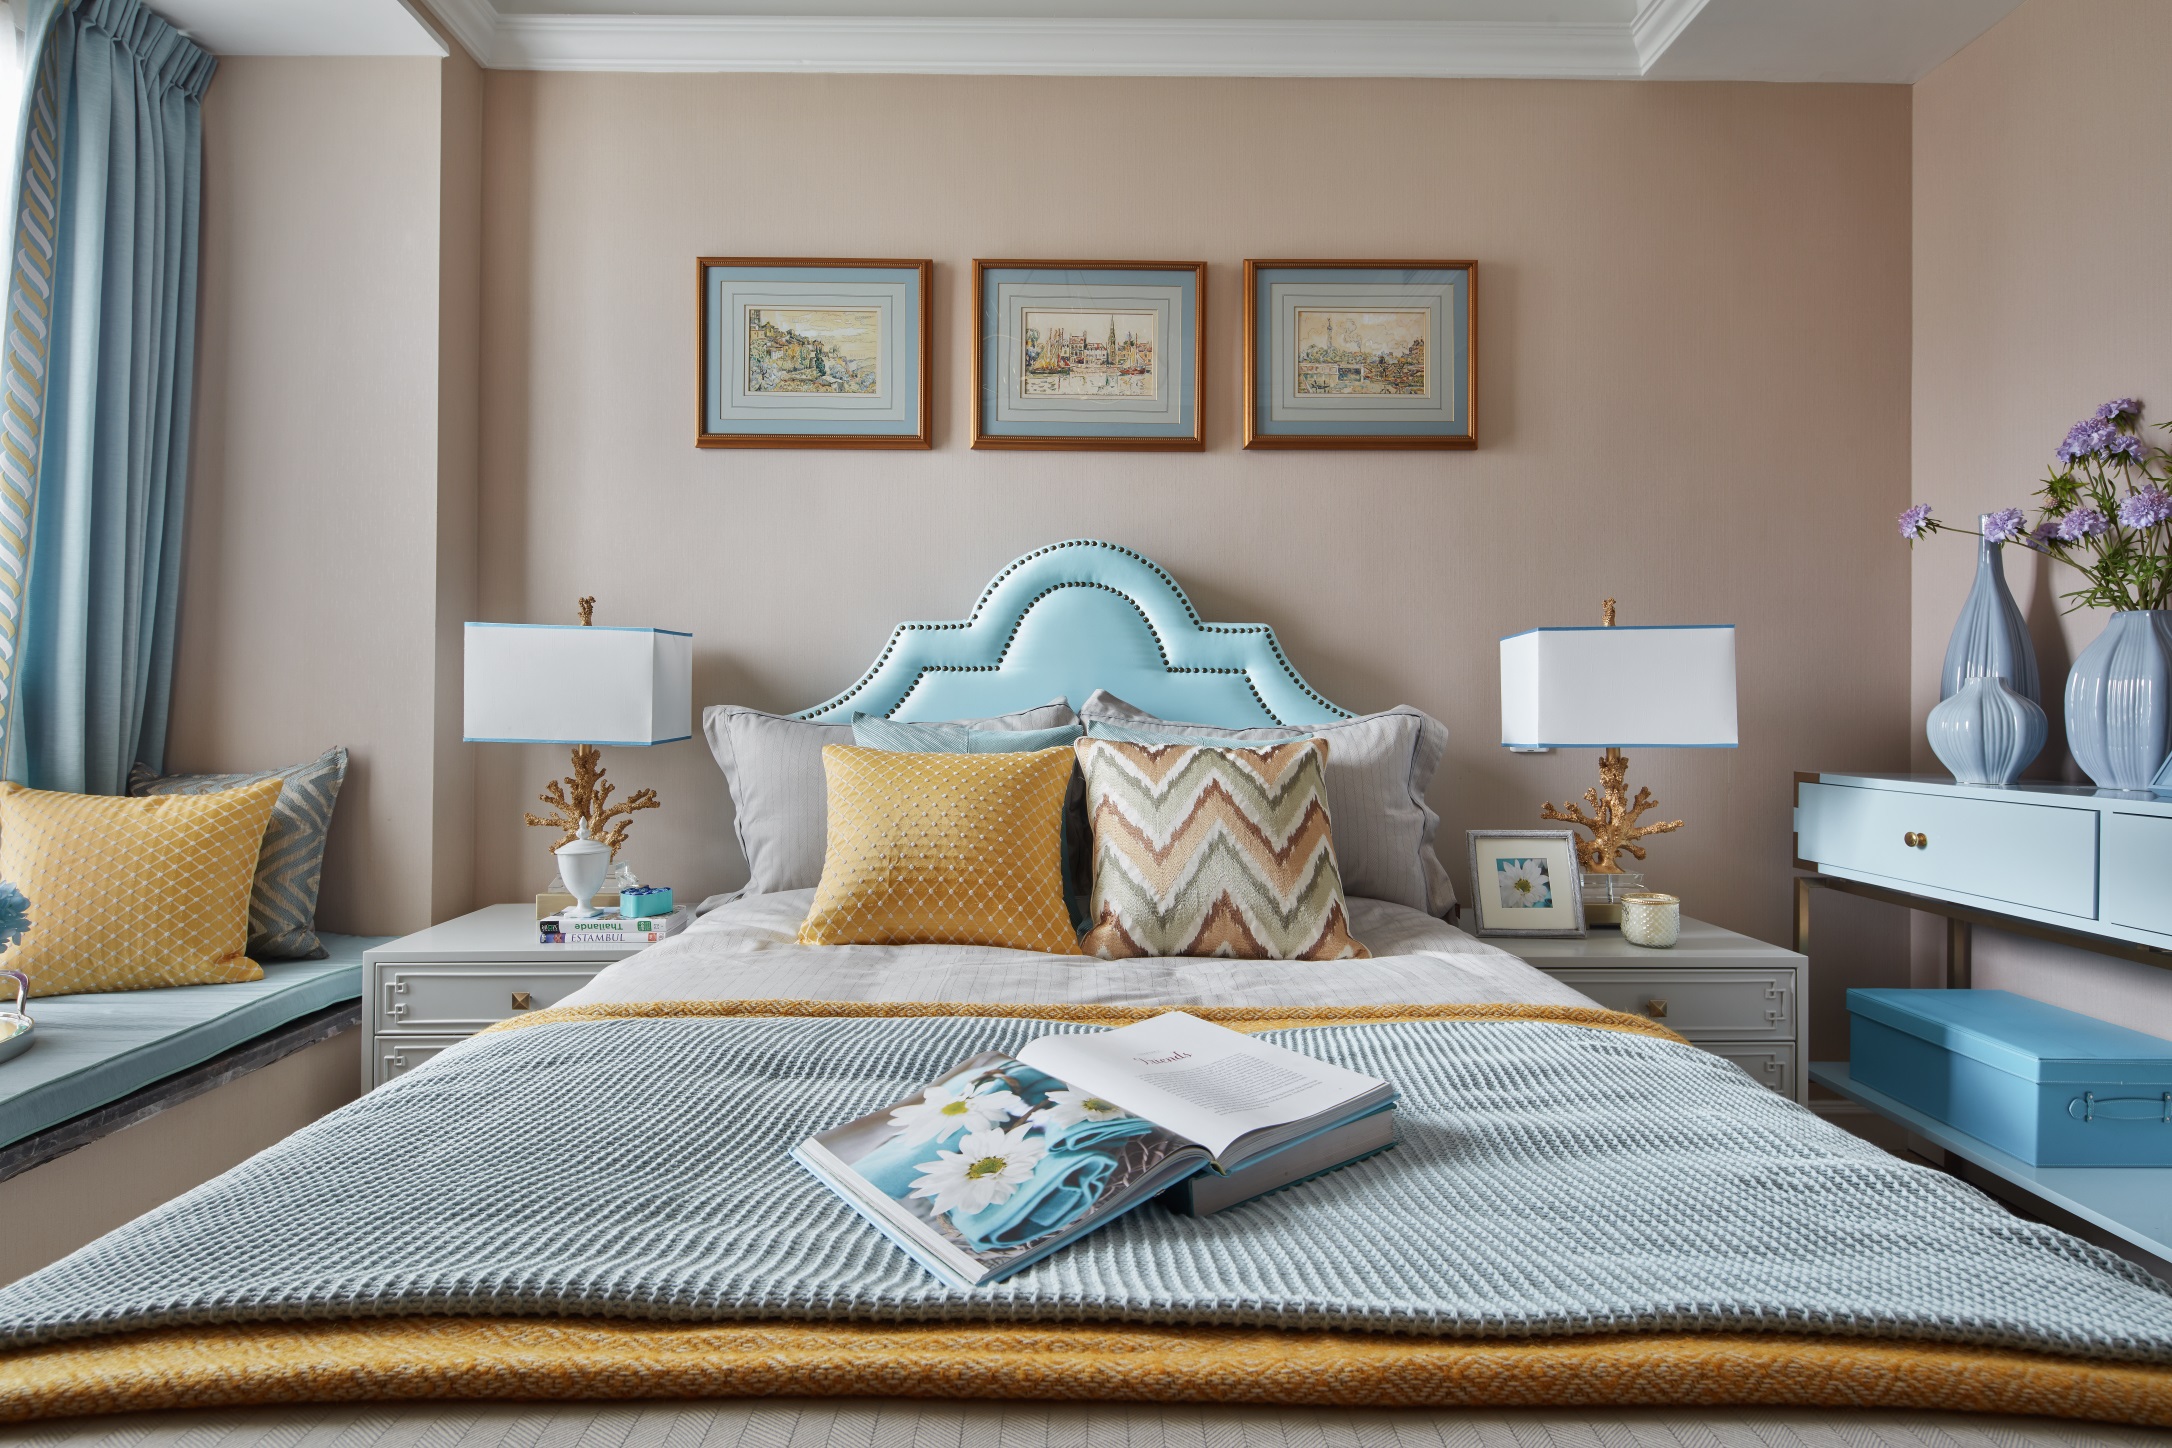 浅粉色背景赋予次卧独特的温馨感，配以浅蓝色床头及黄色软装，增强了空间的艺术品味。